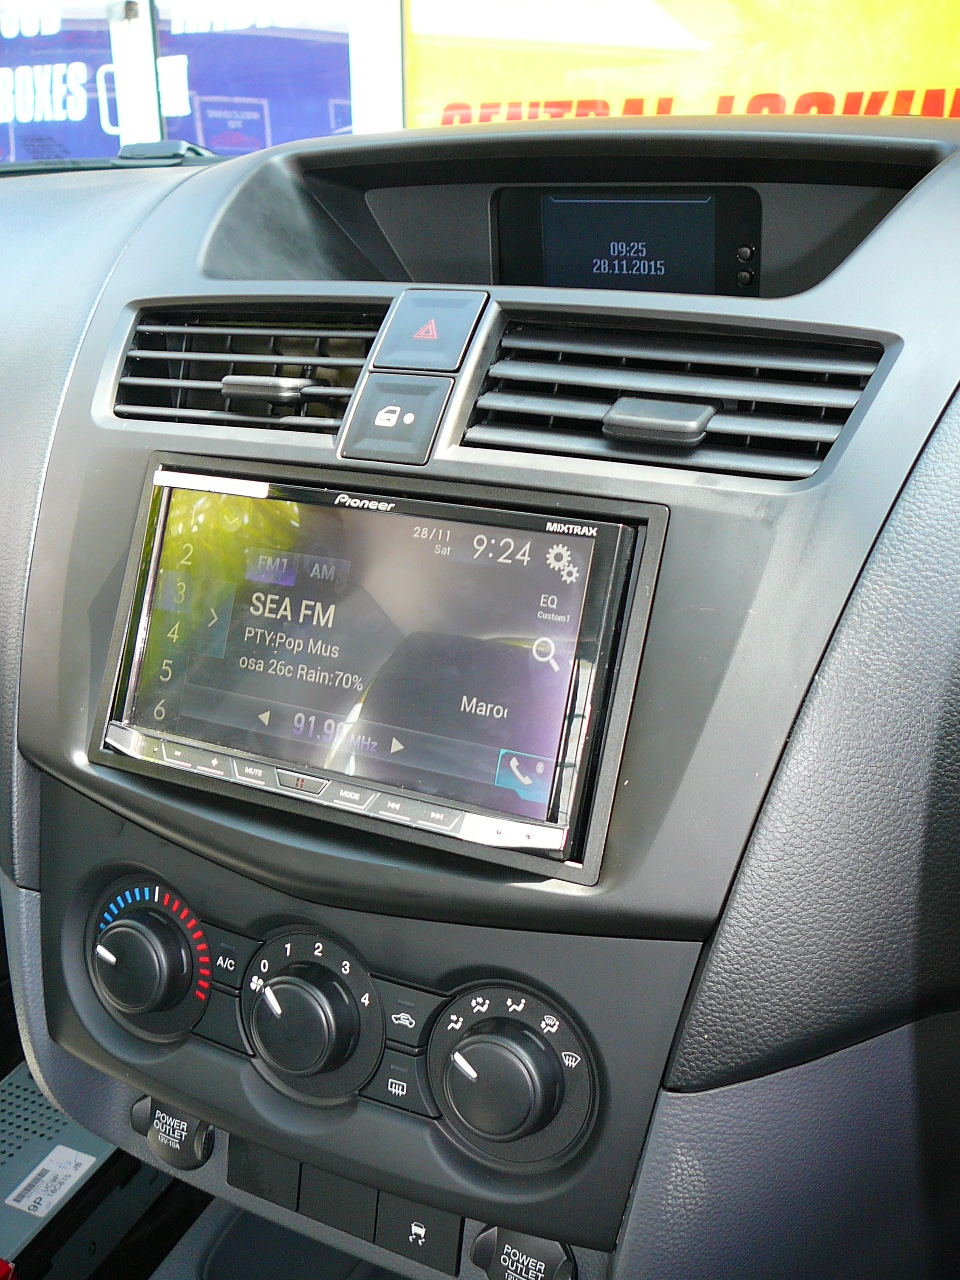 Mazda BT-50 2016, Pioneer AVH-8750BT Audio Visual Unit, Apple Car Play & Reverse Camera Installation